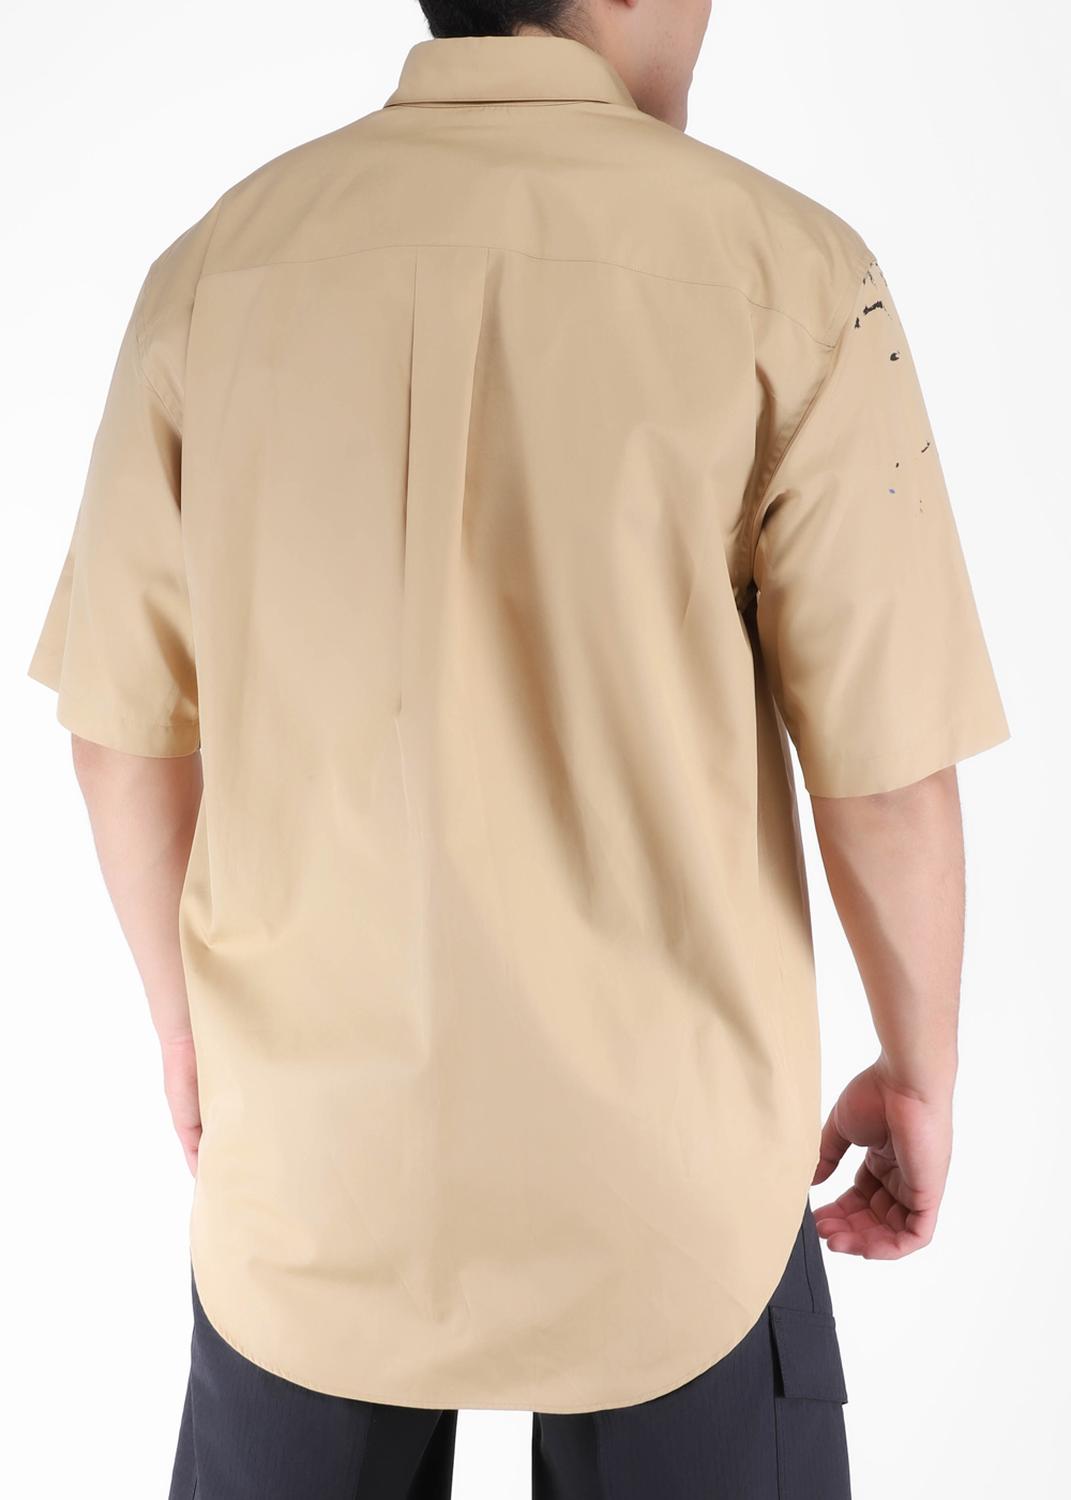 Moschino camisa para hombre MSC-A0203